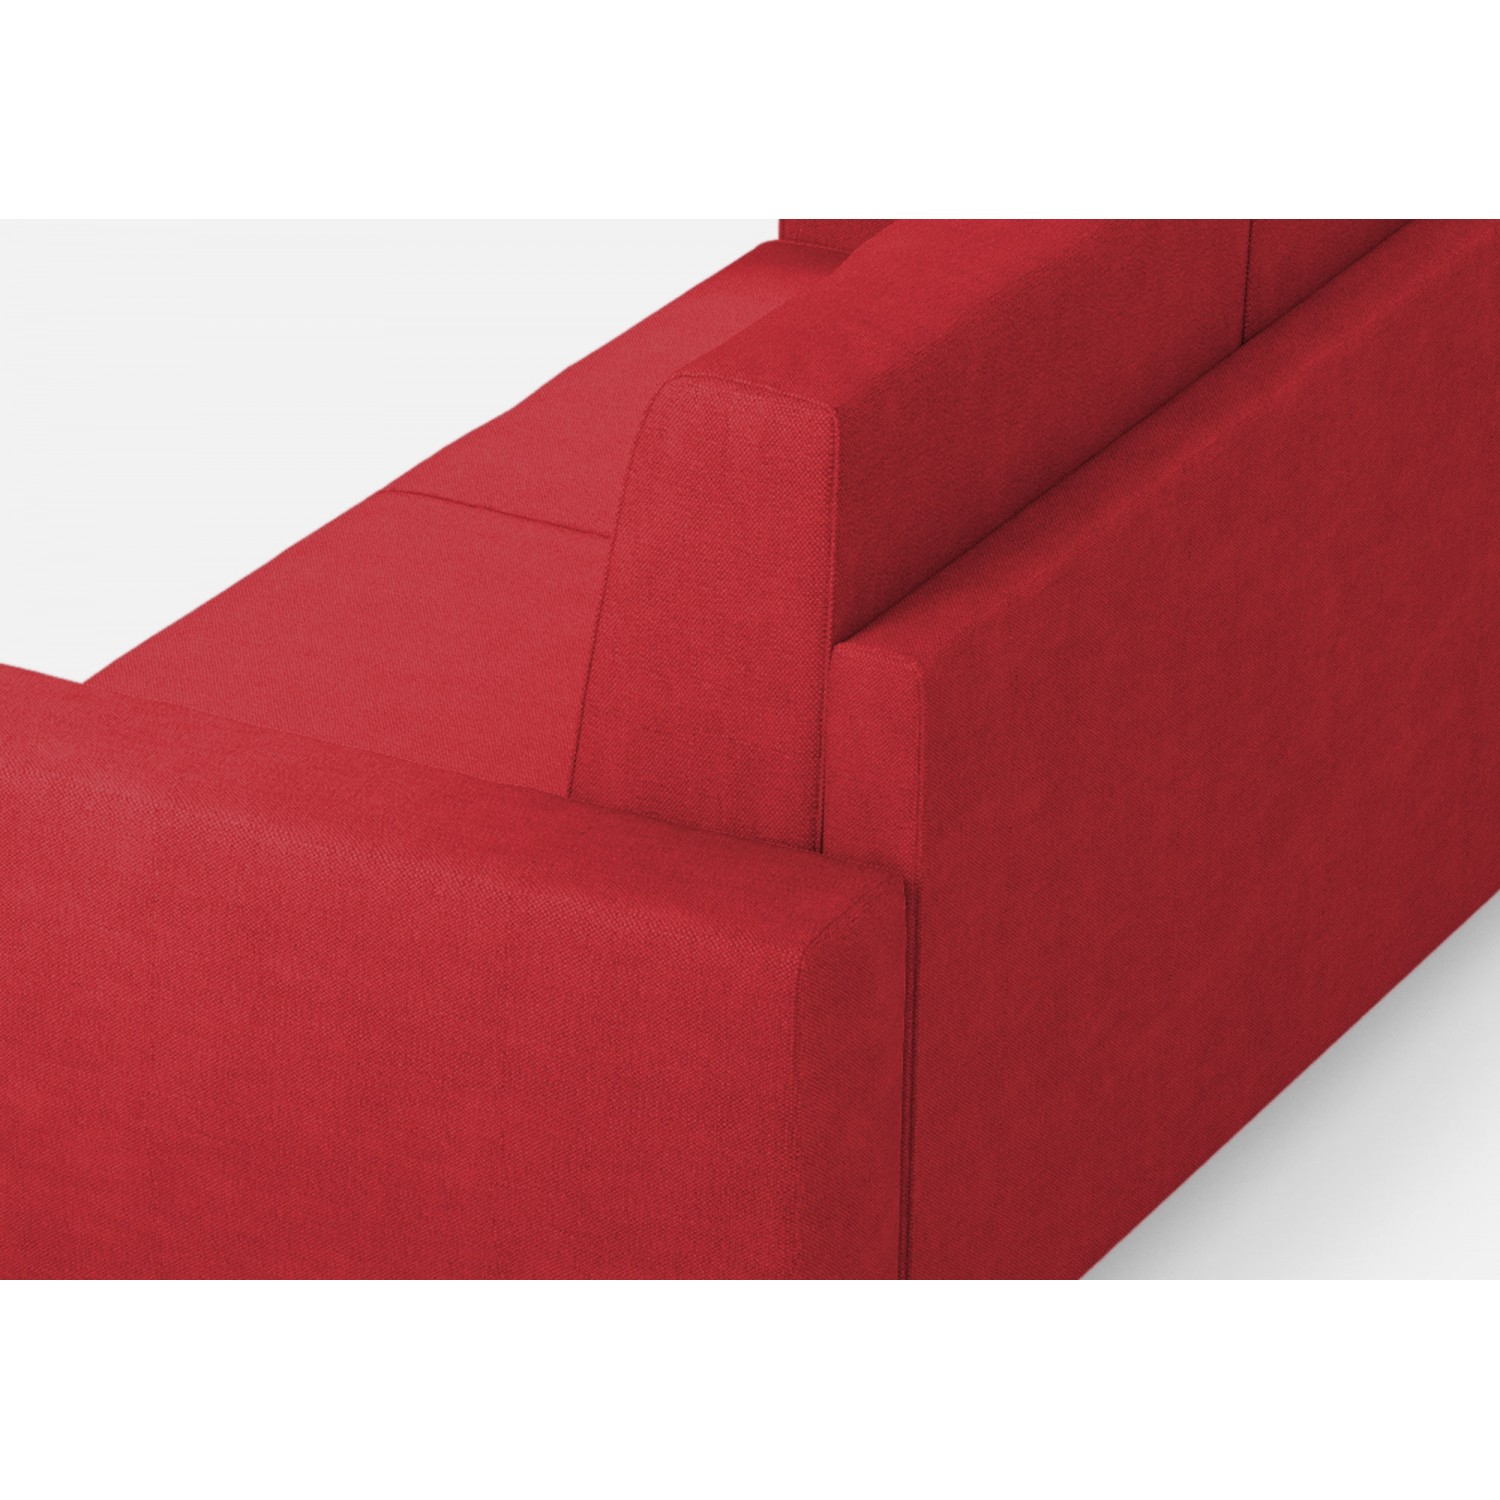 Ityhome Divano Sakar 3 posti  (tre sedute da 60cm) + angolo + divano 2 posti( due sedute da 60cm) misure esterne L.286x226 colore rosso